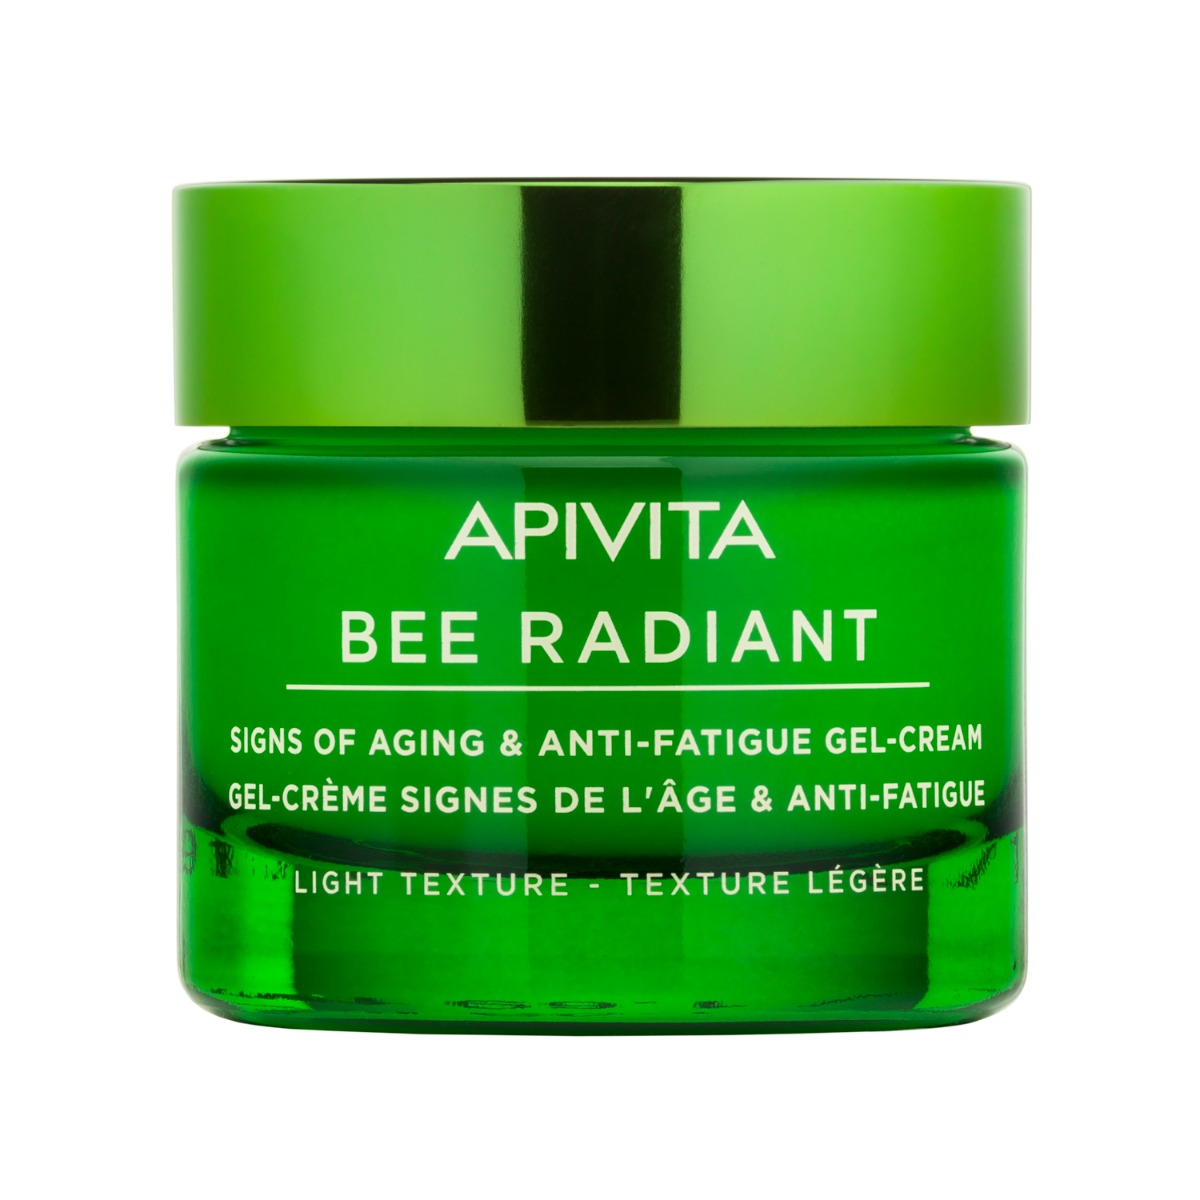 APIVITA Bee Radiant Signs of Aging  Anti-fatique LIGHT Gel-Cream , 50ml